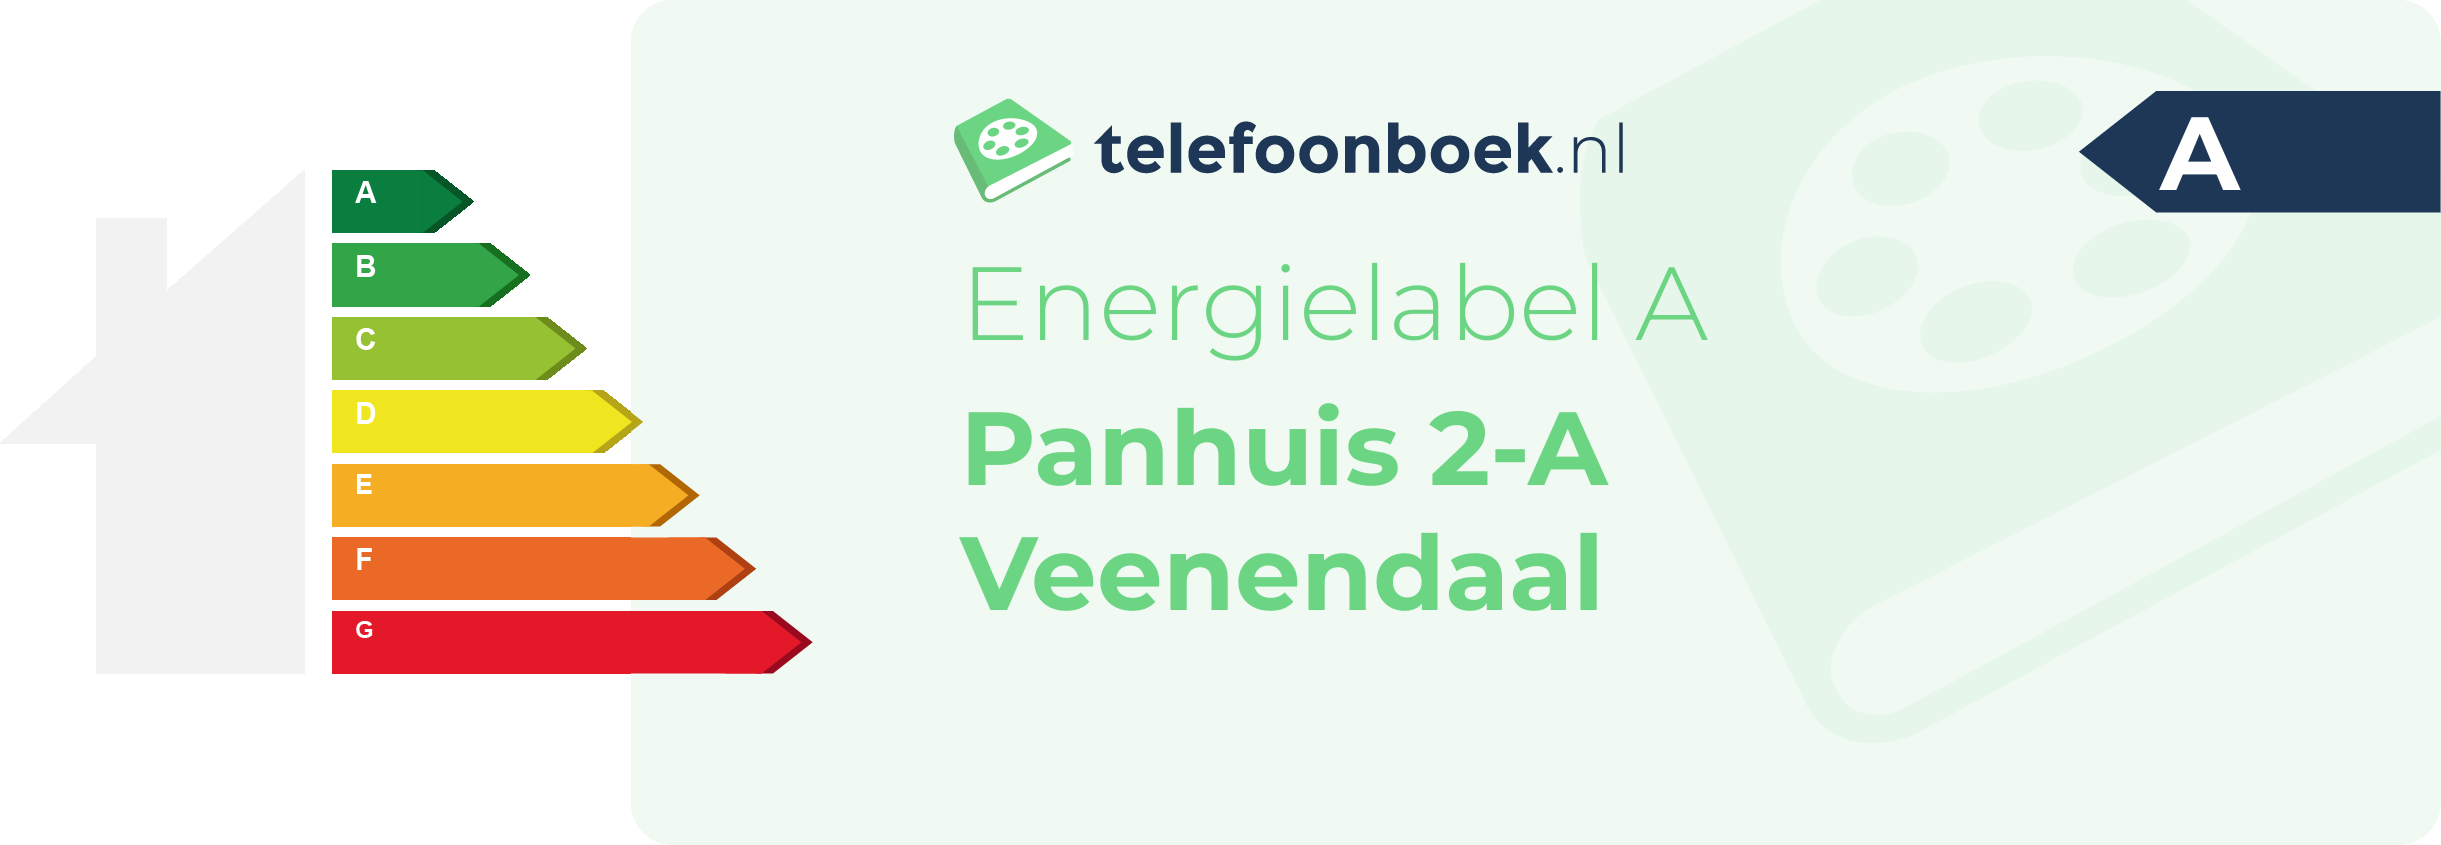 Energielabel Panhuis 2-A Veenendaal